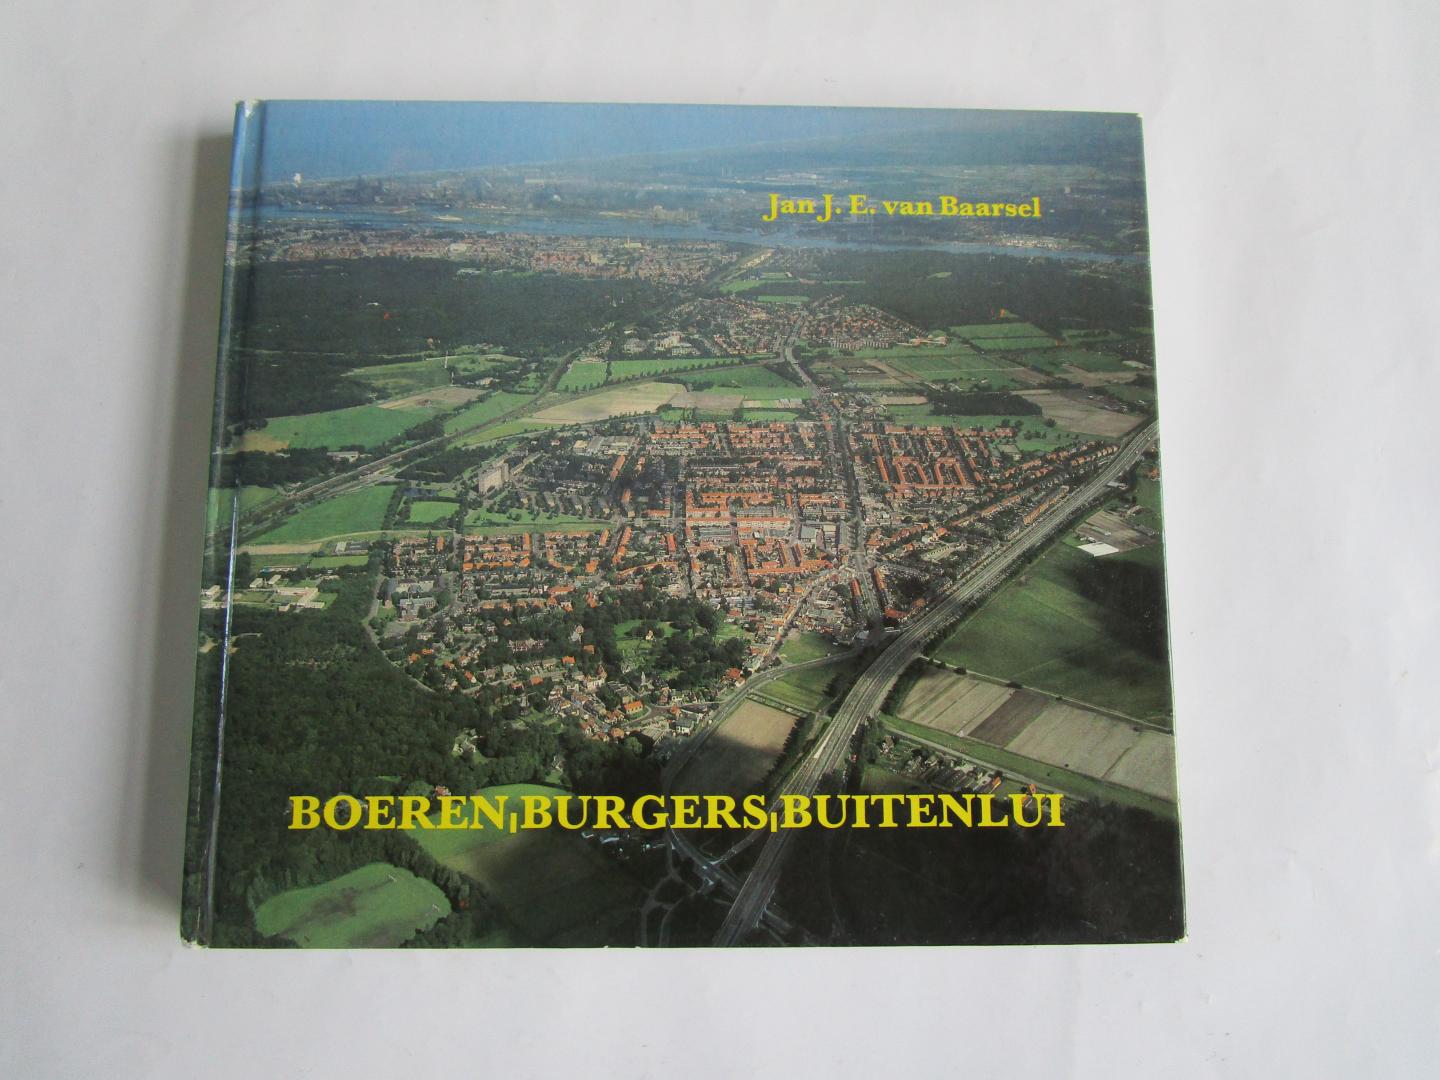 Baarsel, Jan J.E. van - Boeren, Burgers, Buitenlui  - 75 jaar Boerenleenbank Driehuizen, Velsen;  Rabobank Santpoort -